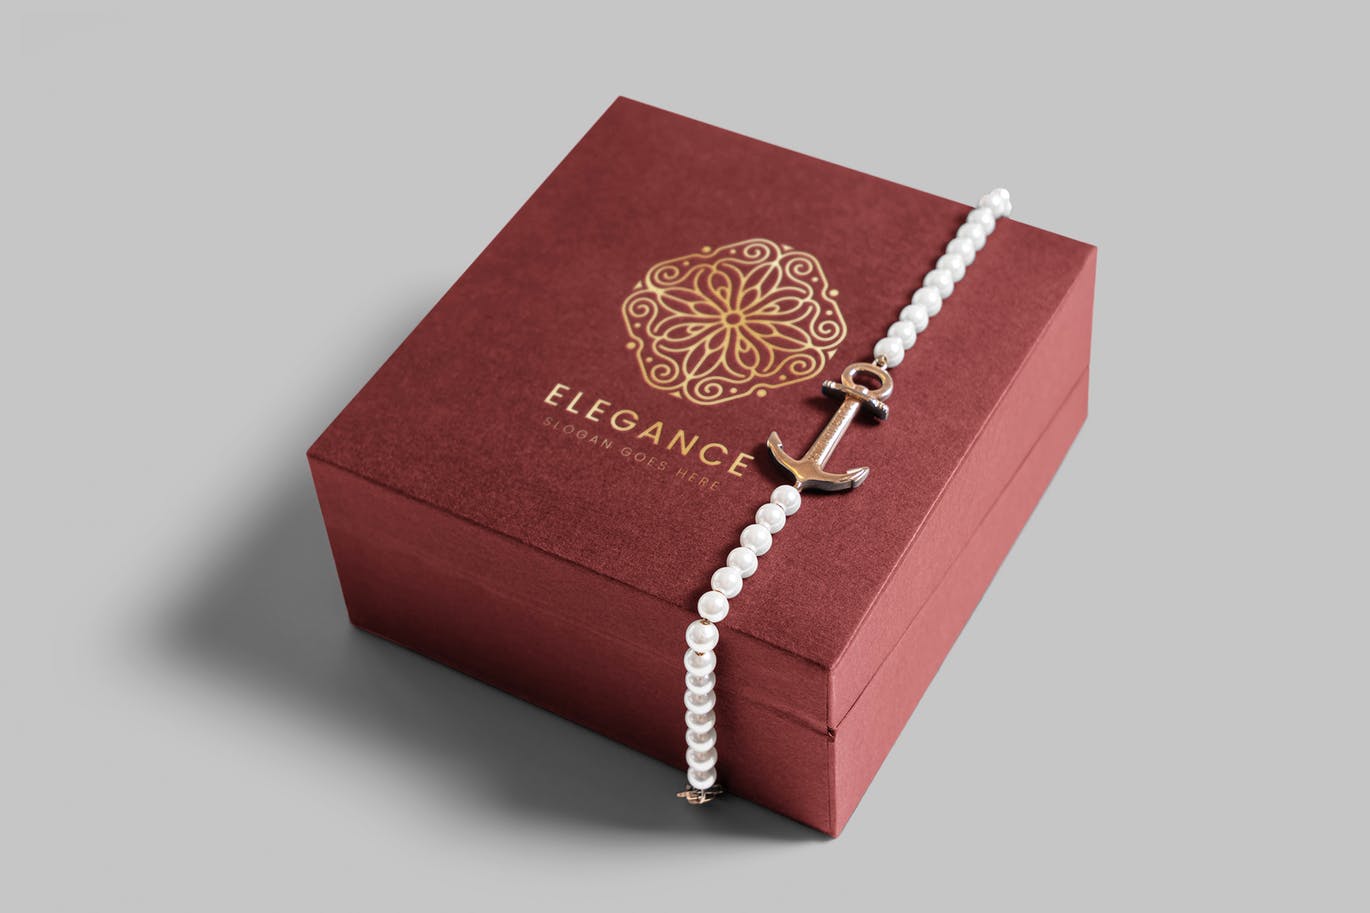 珠宝包装盒设计图第一素材精选模板 Jewelry Packaging Box Mockups插图(3)